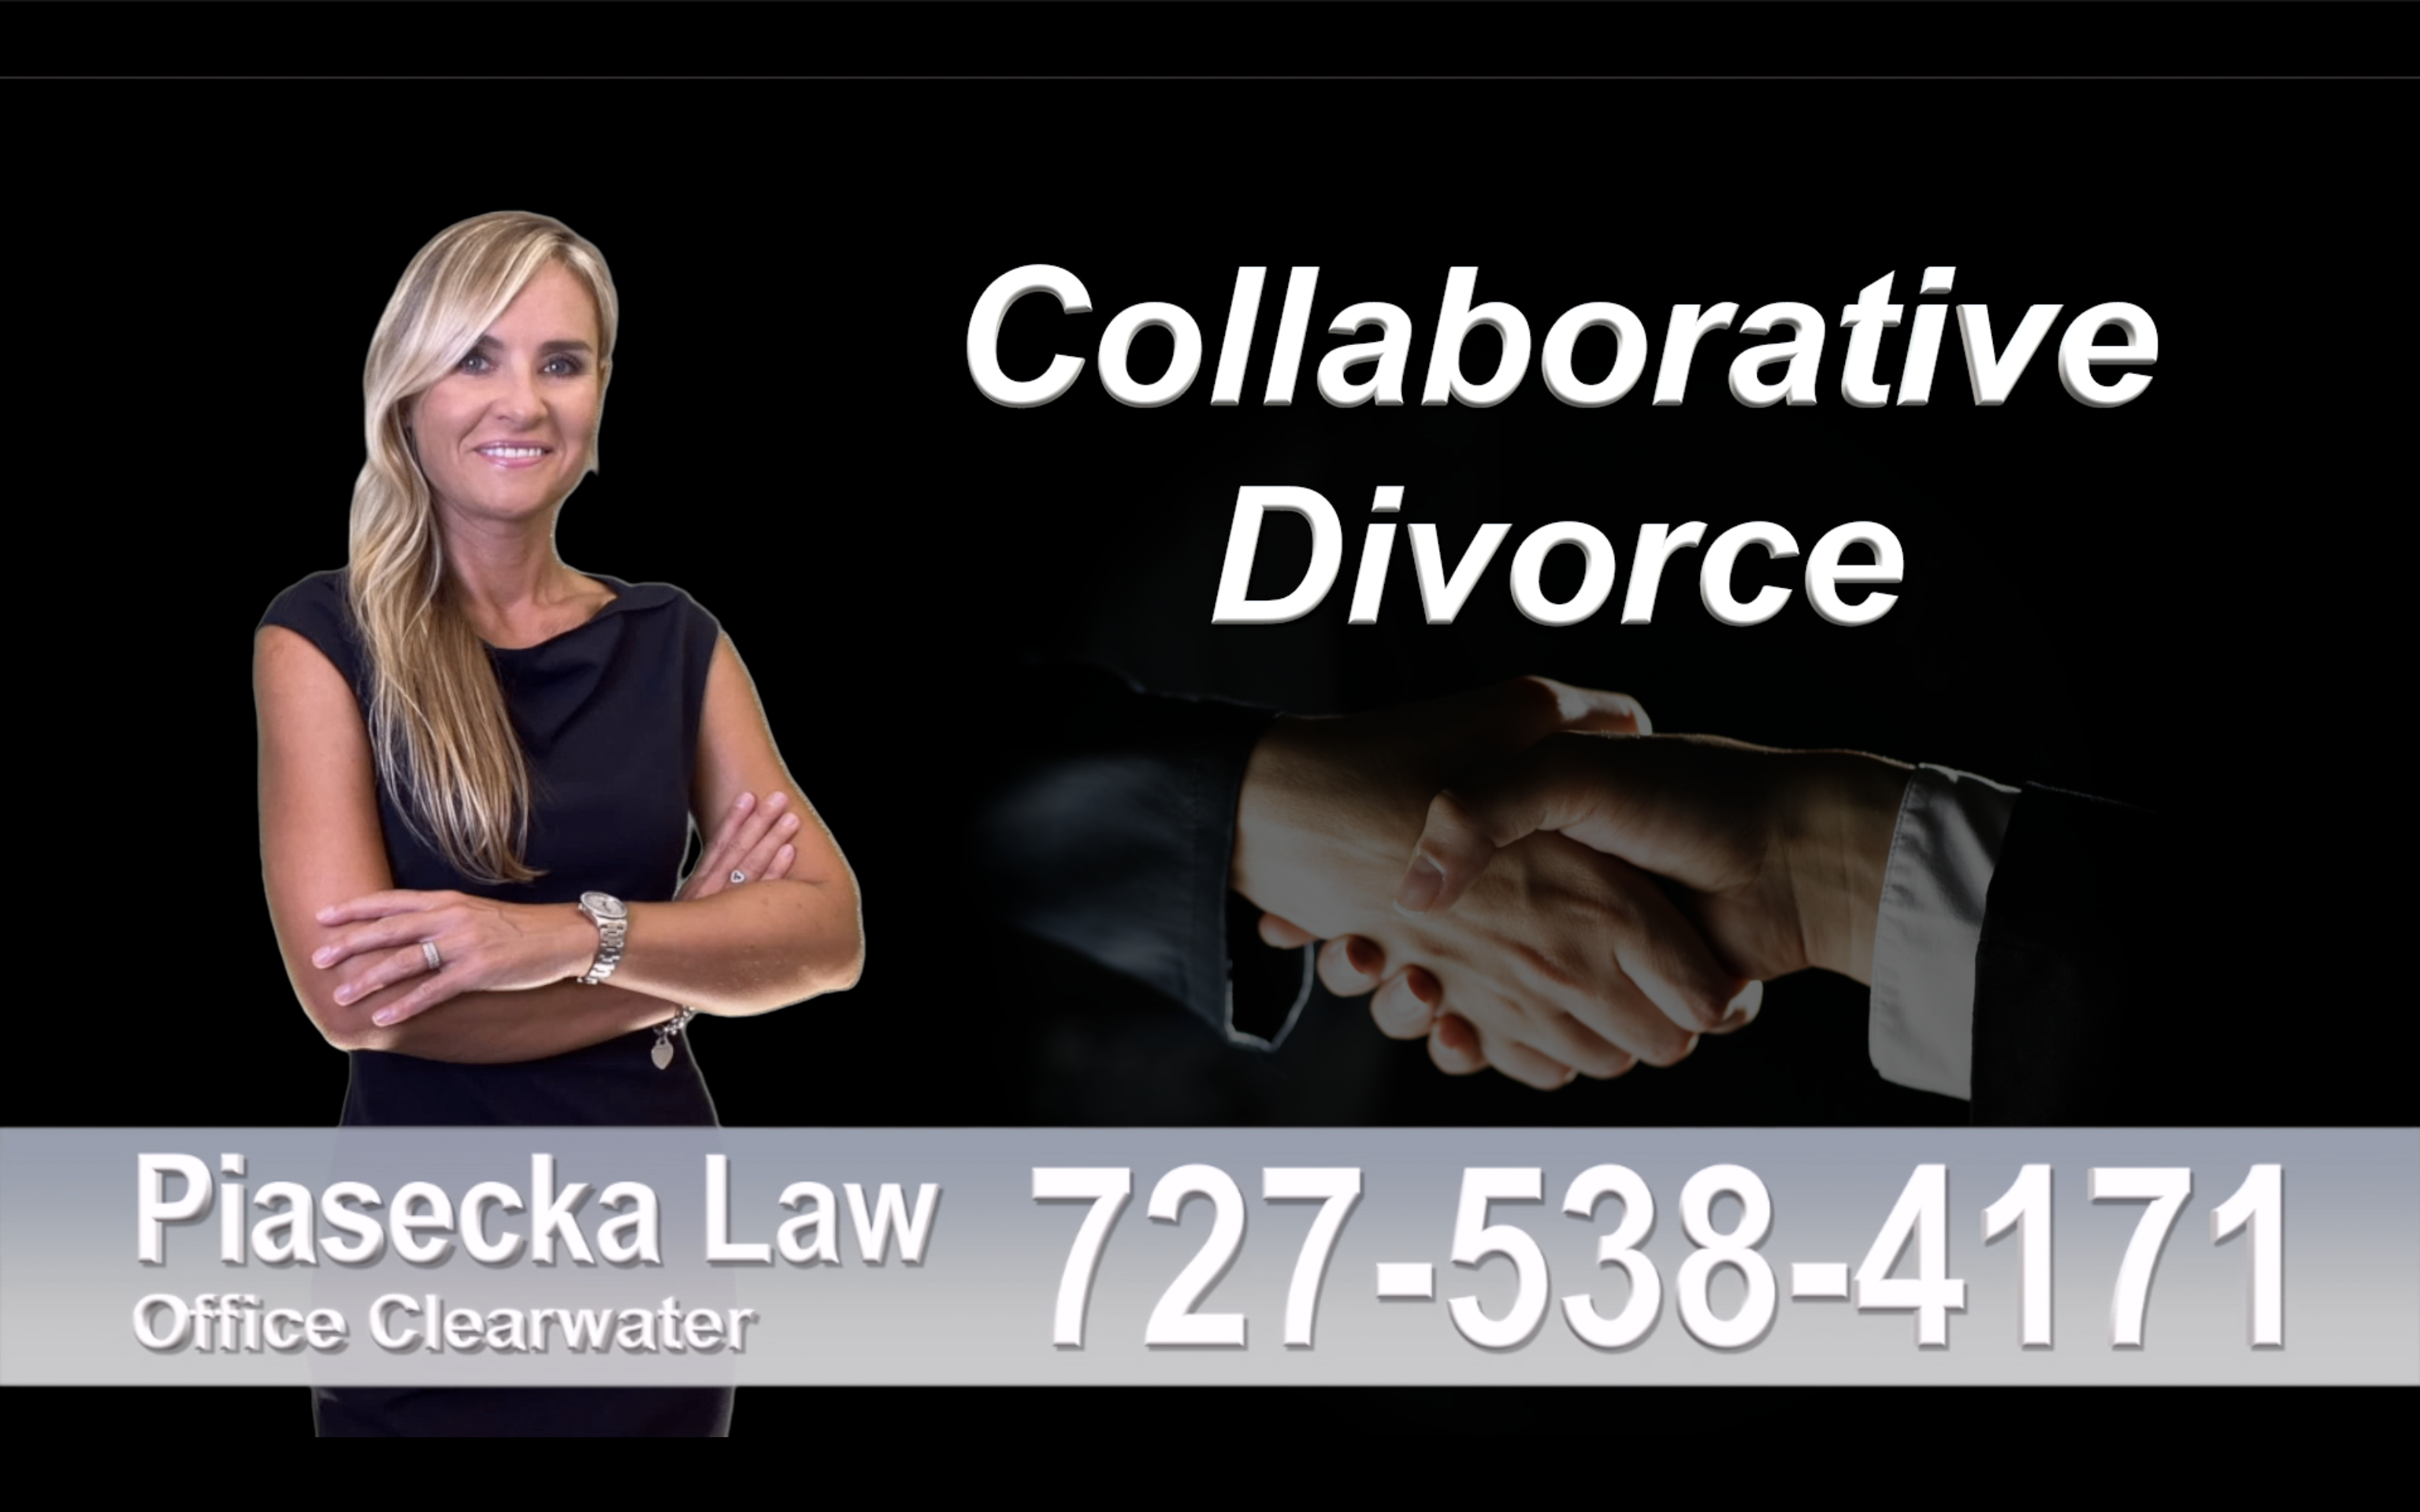 New Tampa Collaborative, Divorce, Attorney, Agnieszka, Piasecka, Prawnik, Rozwodowy, Rozwód, Adwokat, rozwodowy, Najlepszy, Best, Collaborative, Divorce, Attorney, Family,